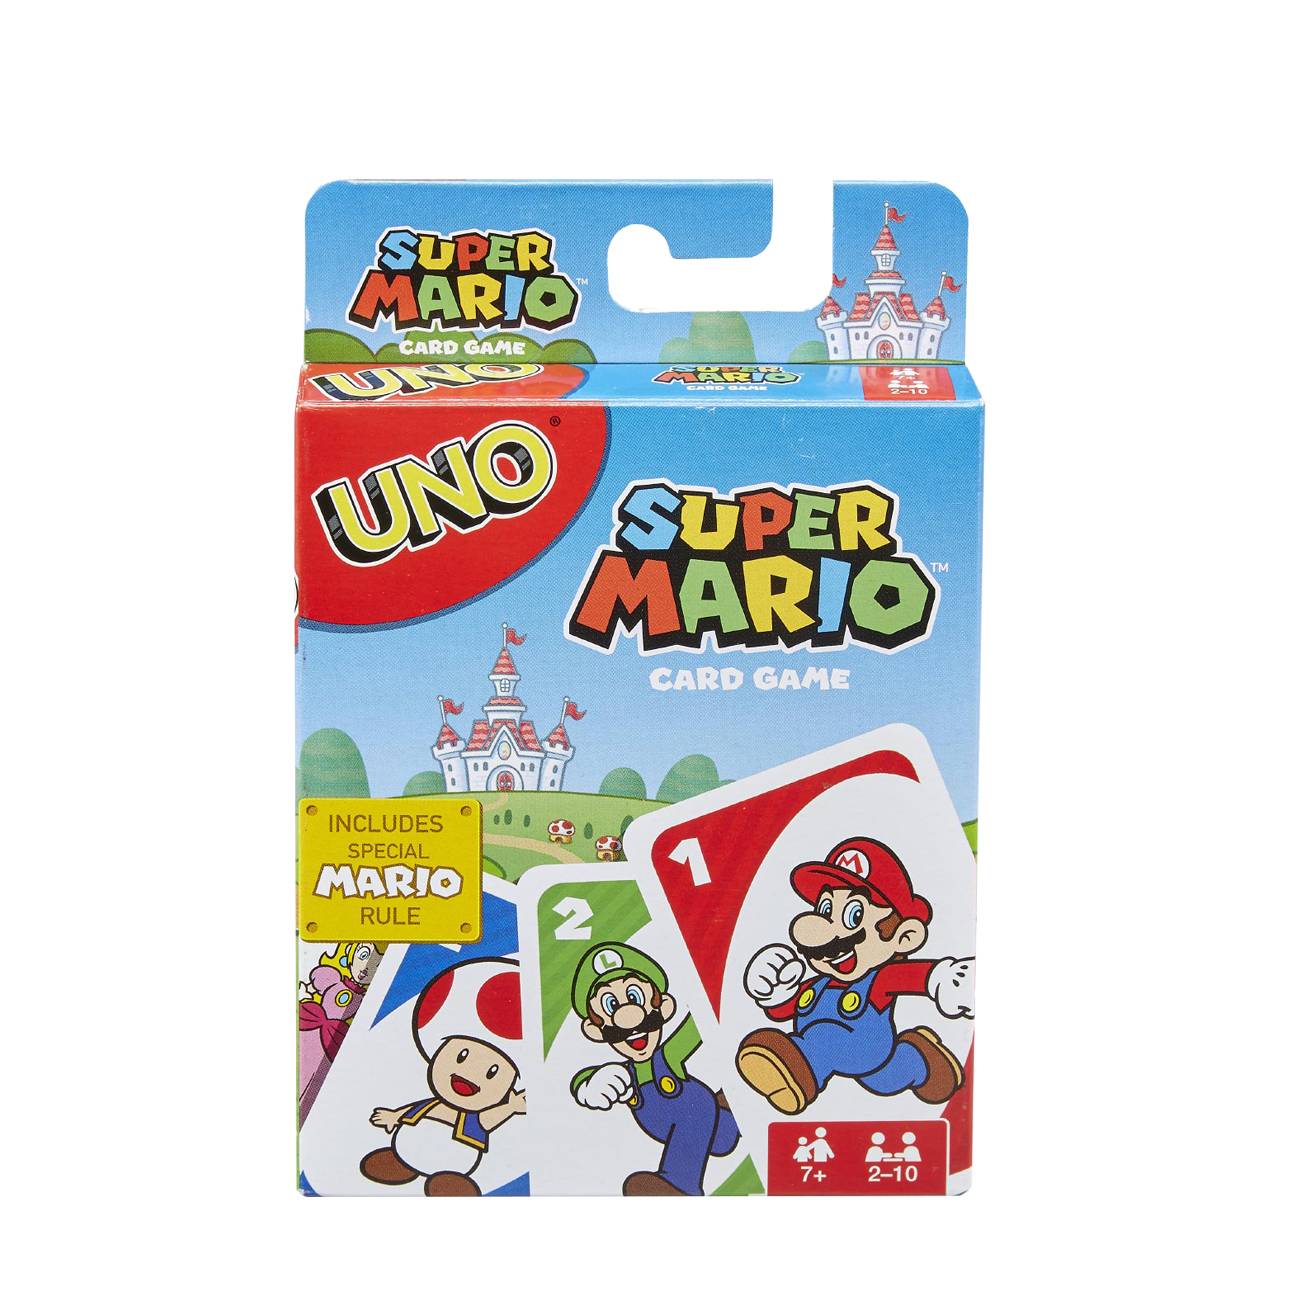 Uno Super Mario Card Game bestvalue.eu